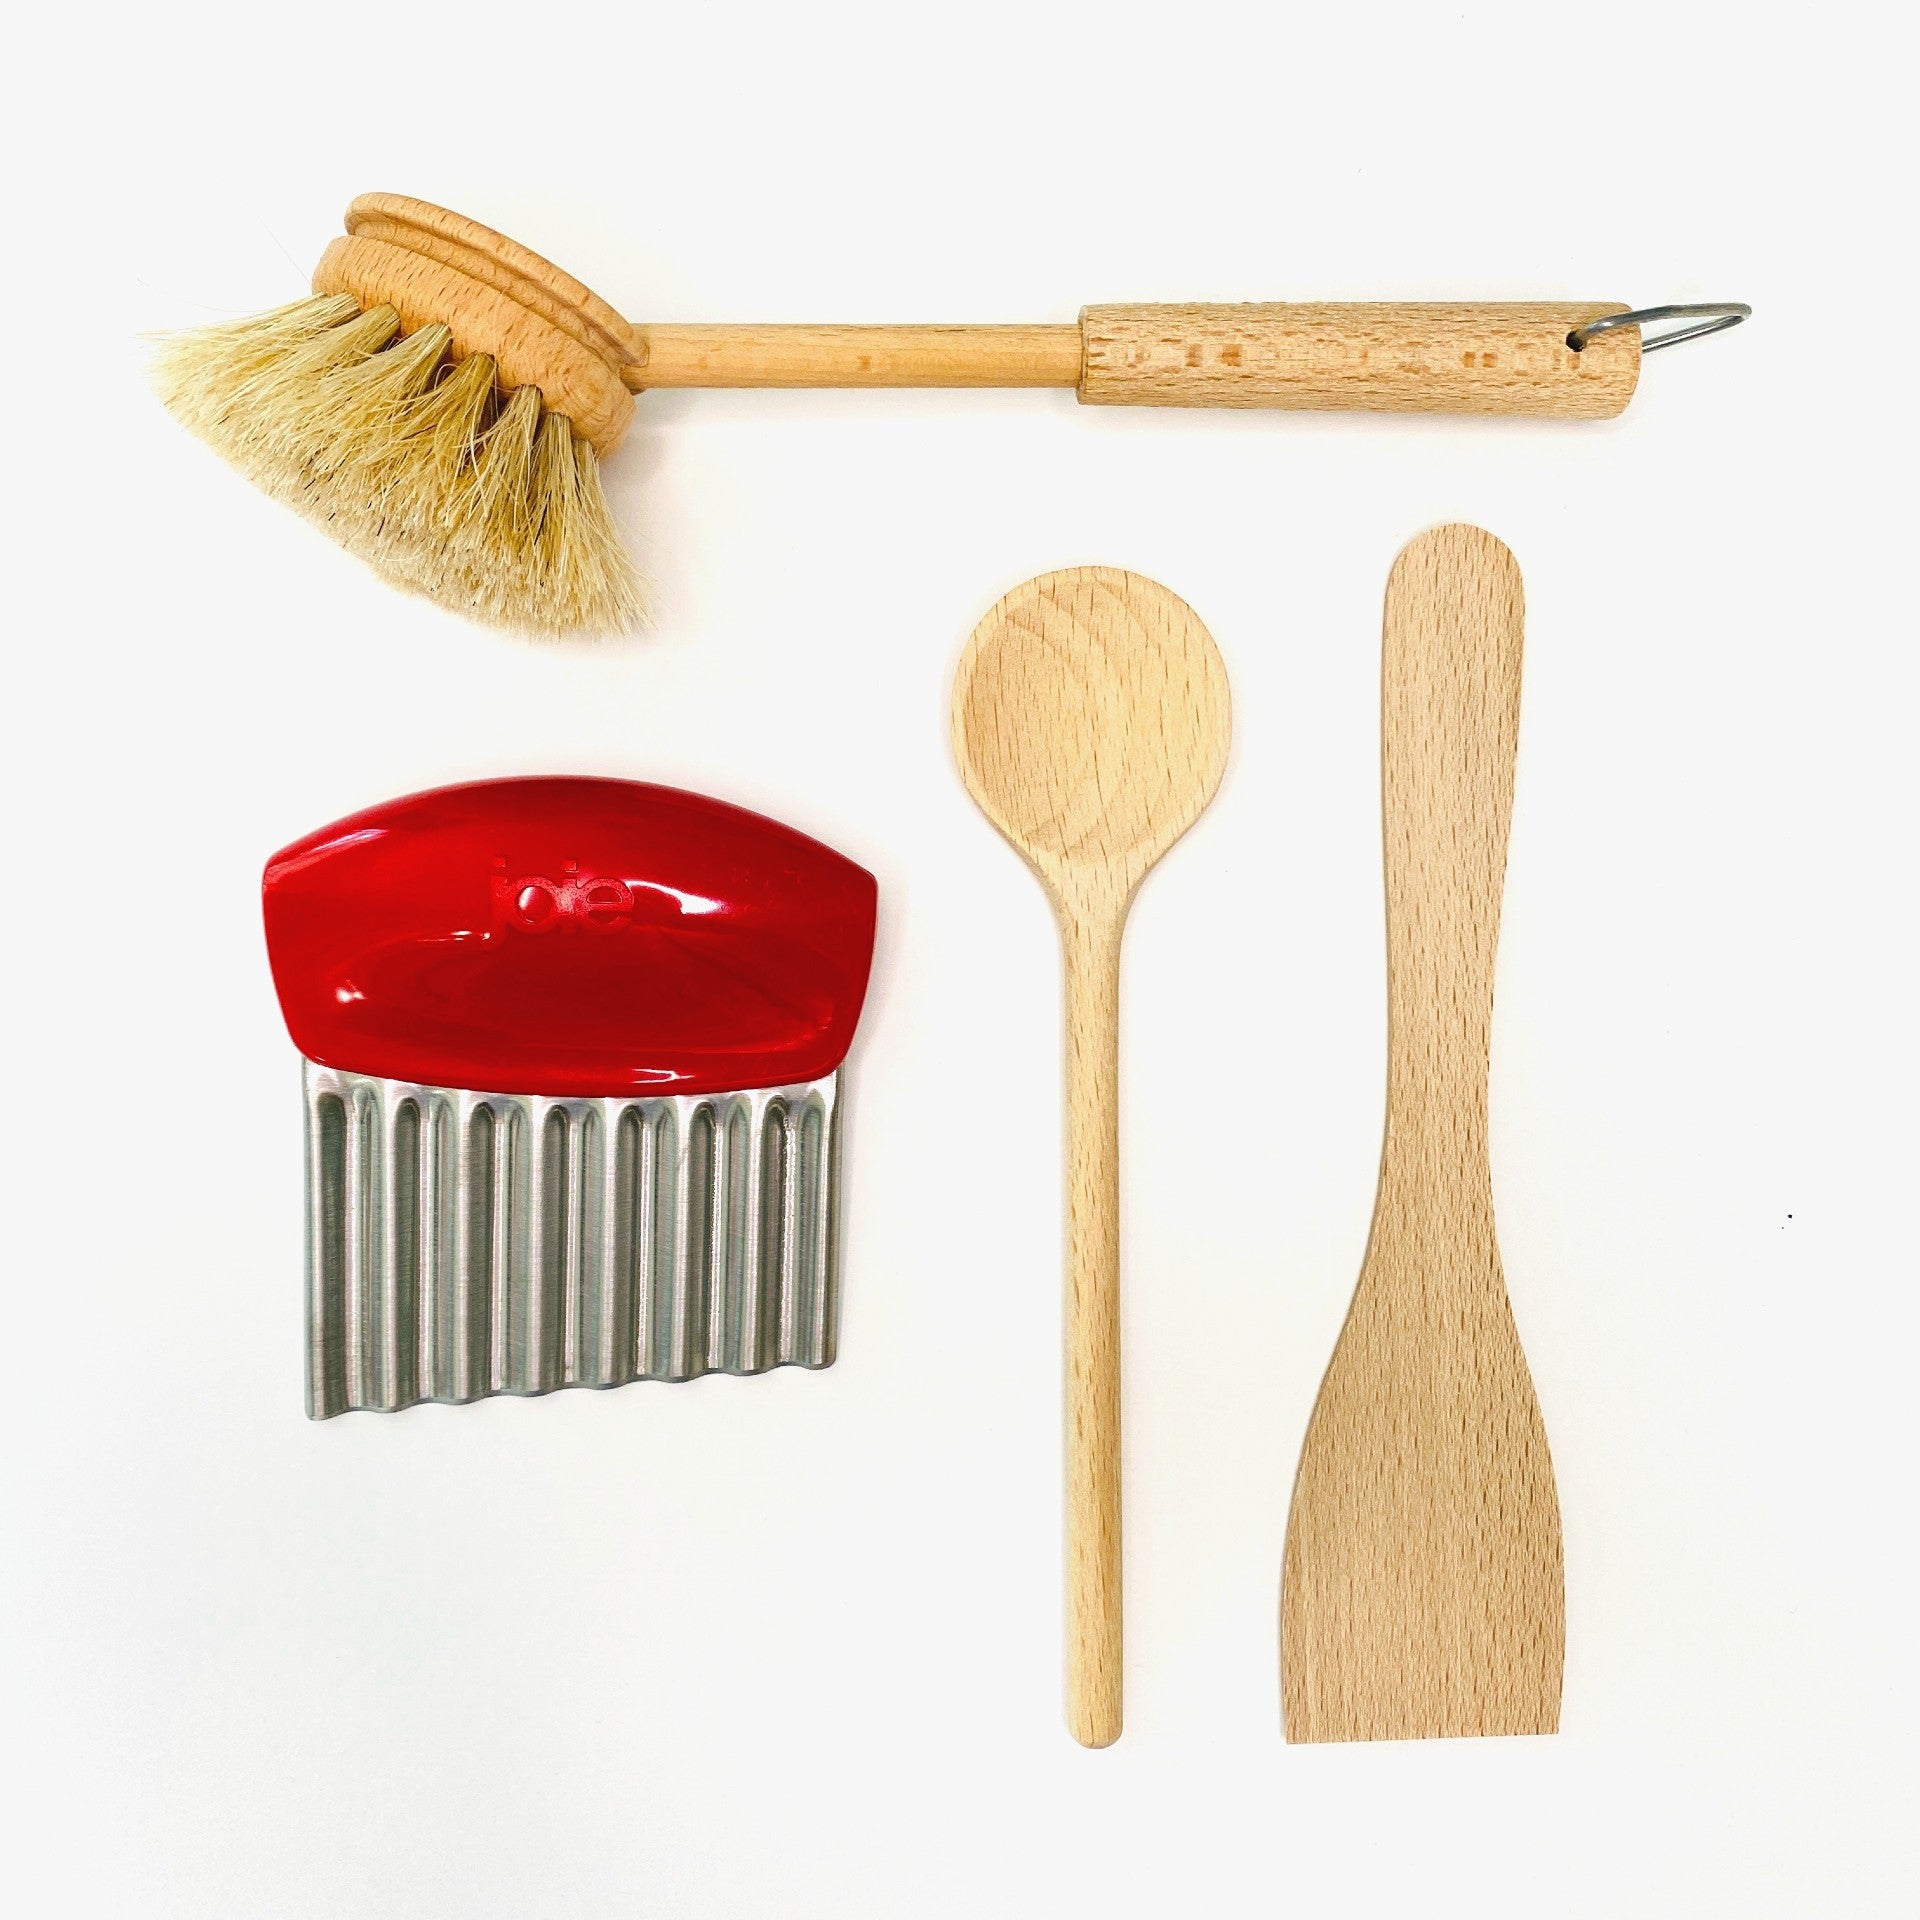 Montessori Kitchen Tools, Toddler Kitchen Accessories